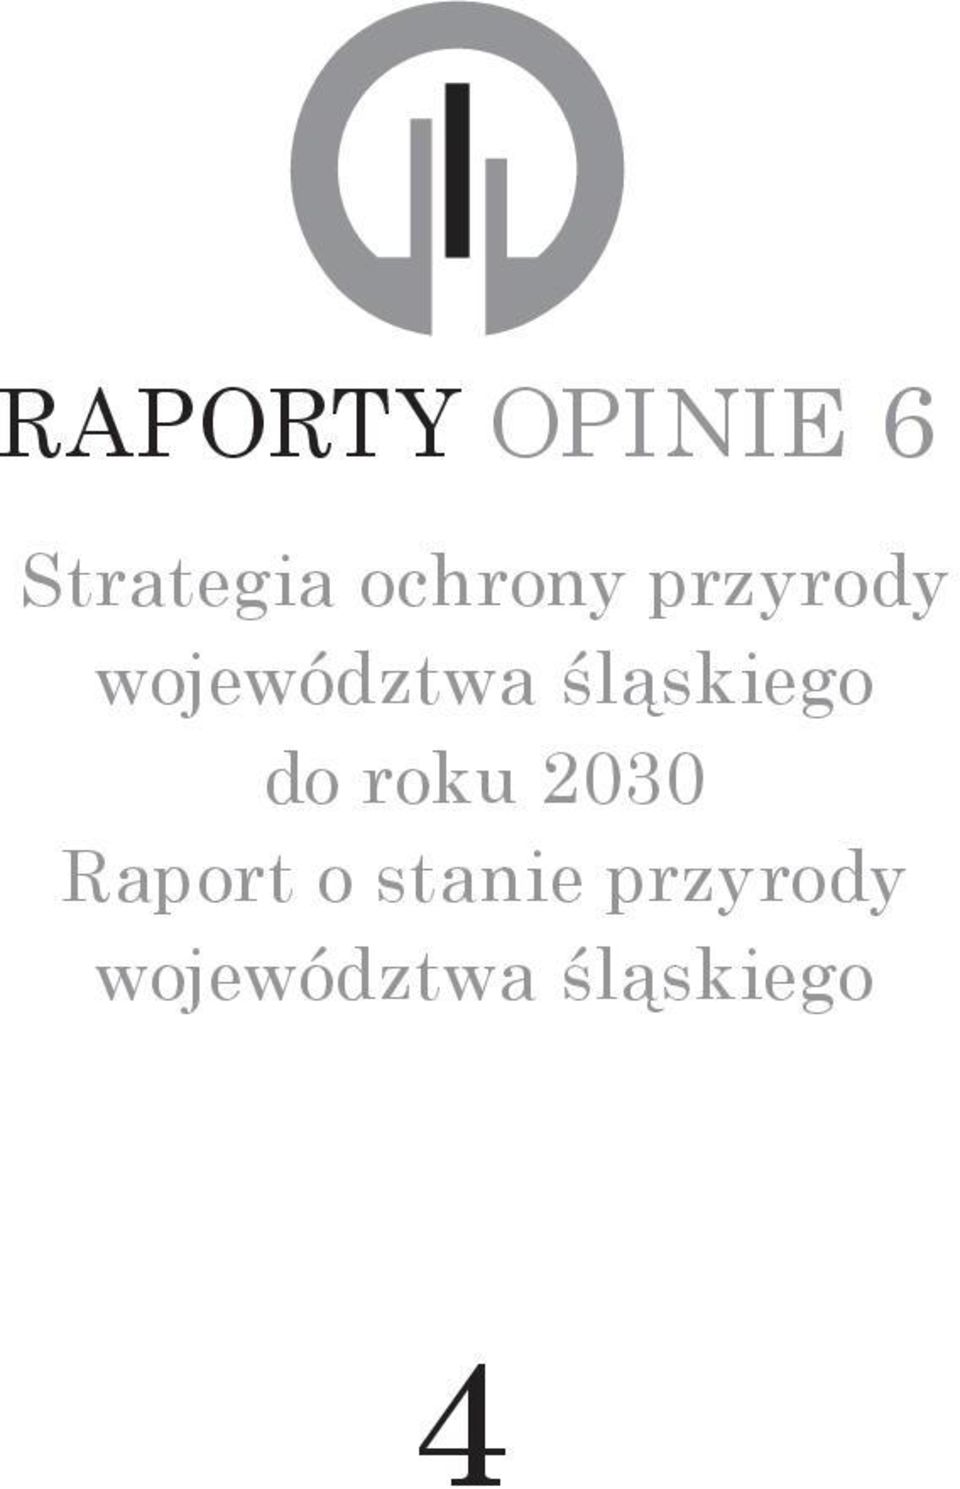 śląskiego do roku 2030 Raport o